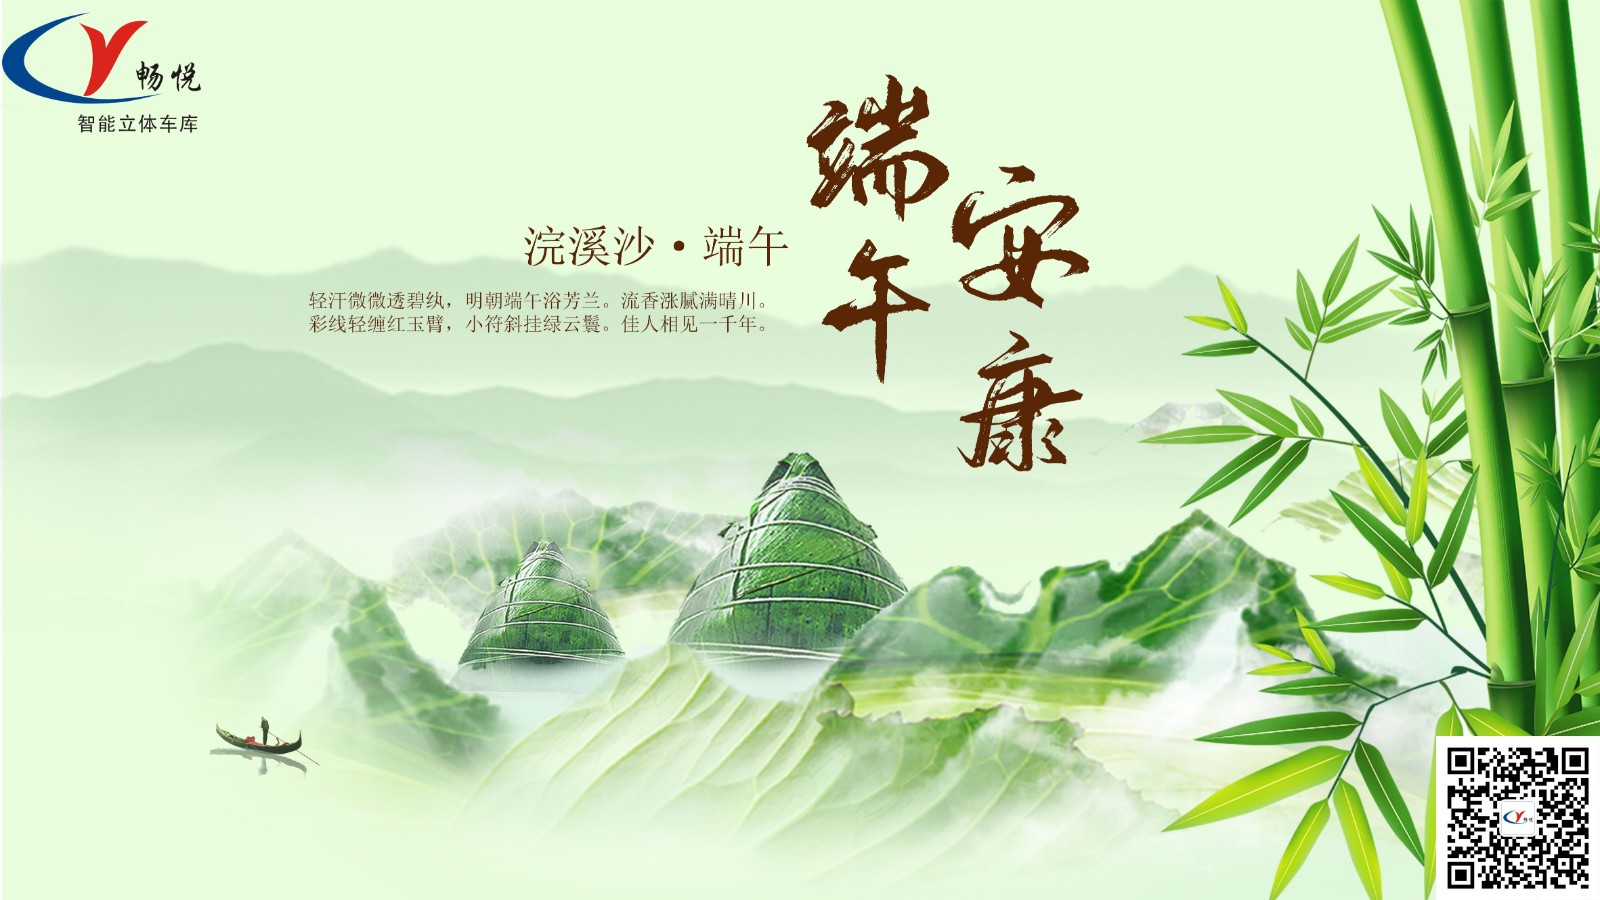 上海美女福利视频网站祝大家端午安康！